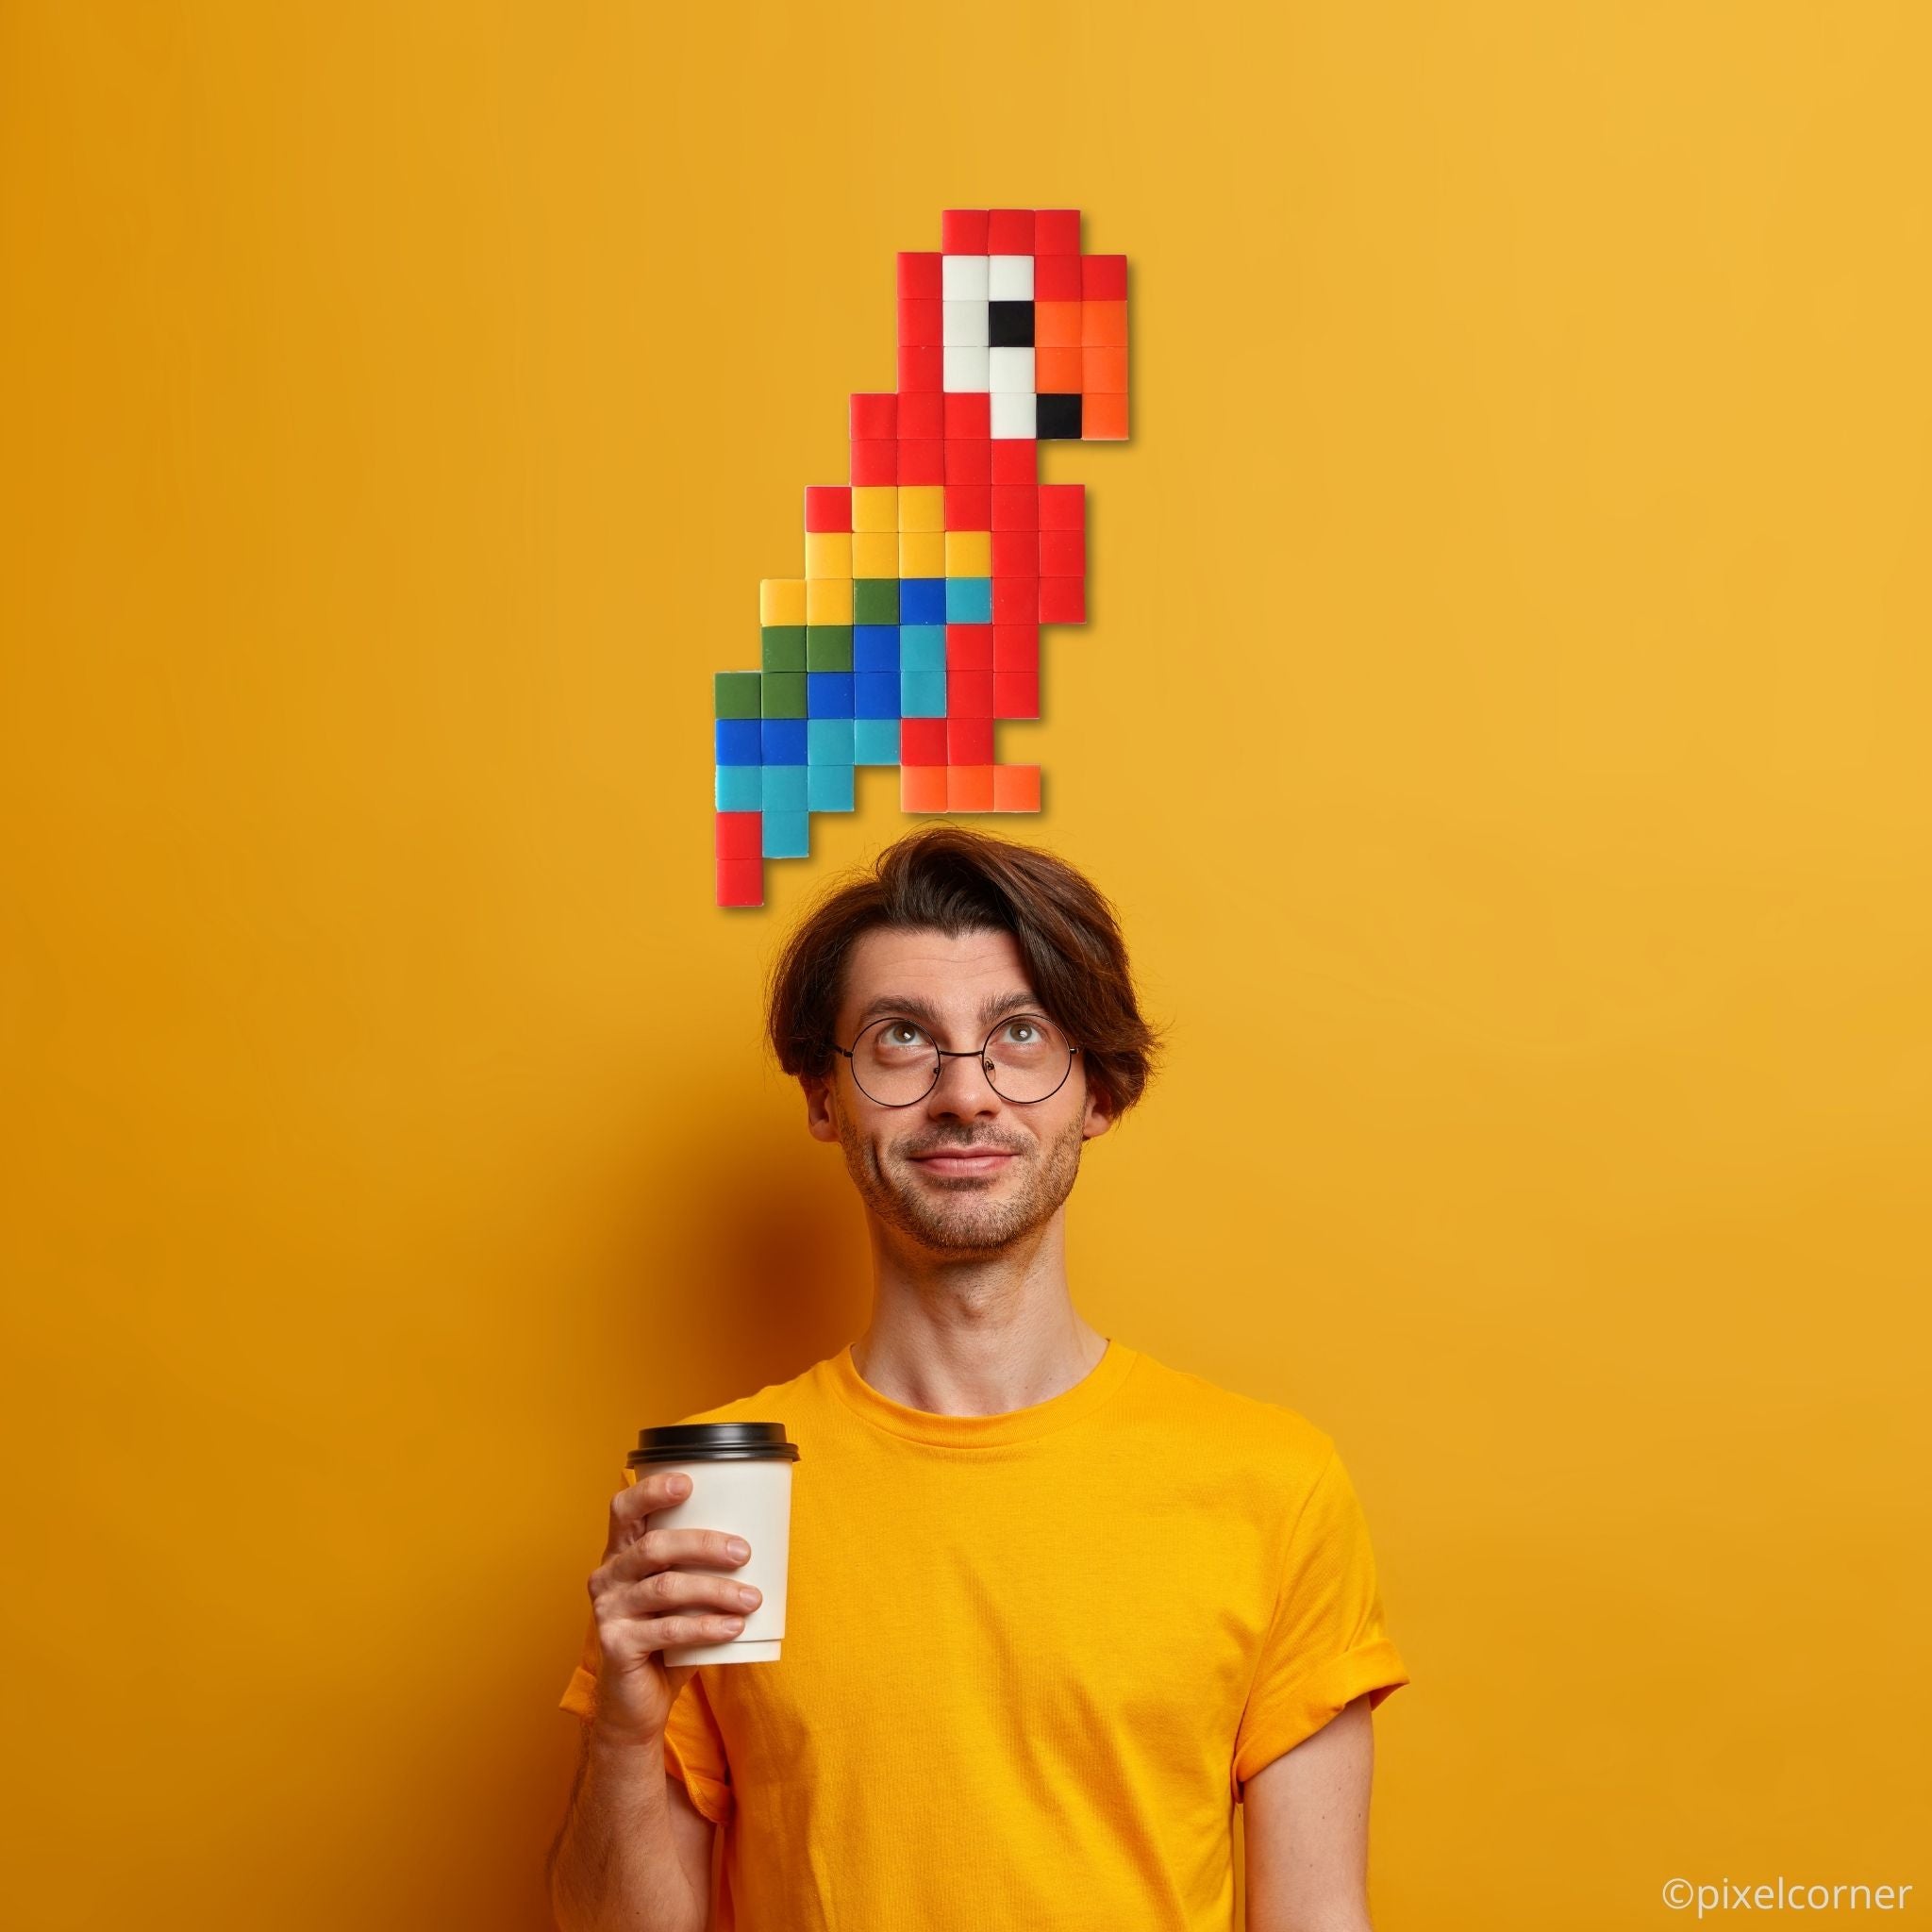 Pixel Art Kit "Papa Gayo" par Pixel Corner - Kits de loisirs créatifs